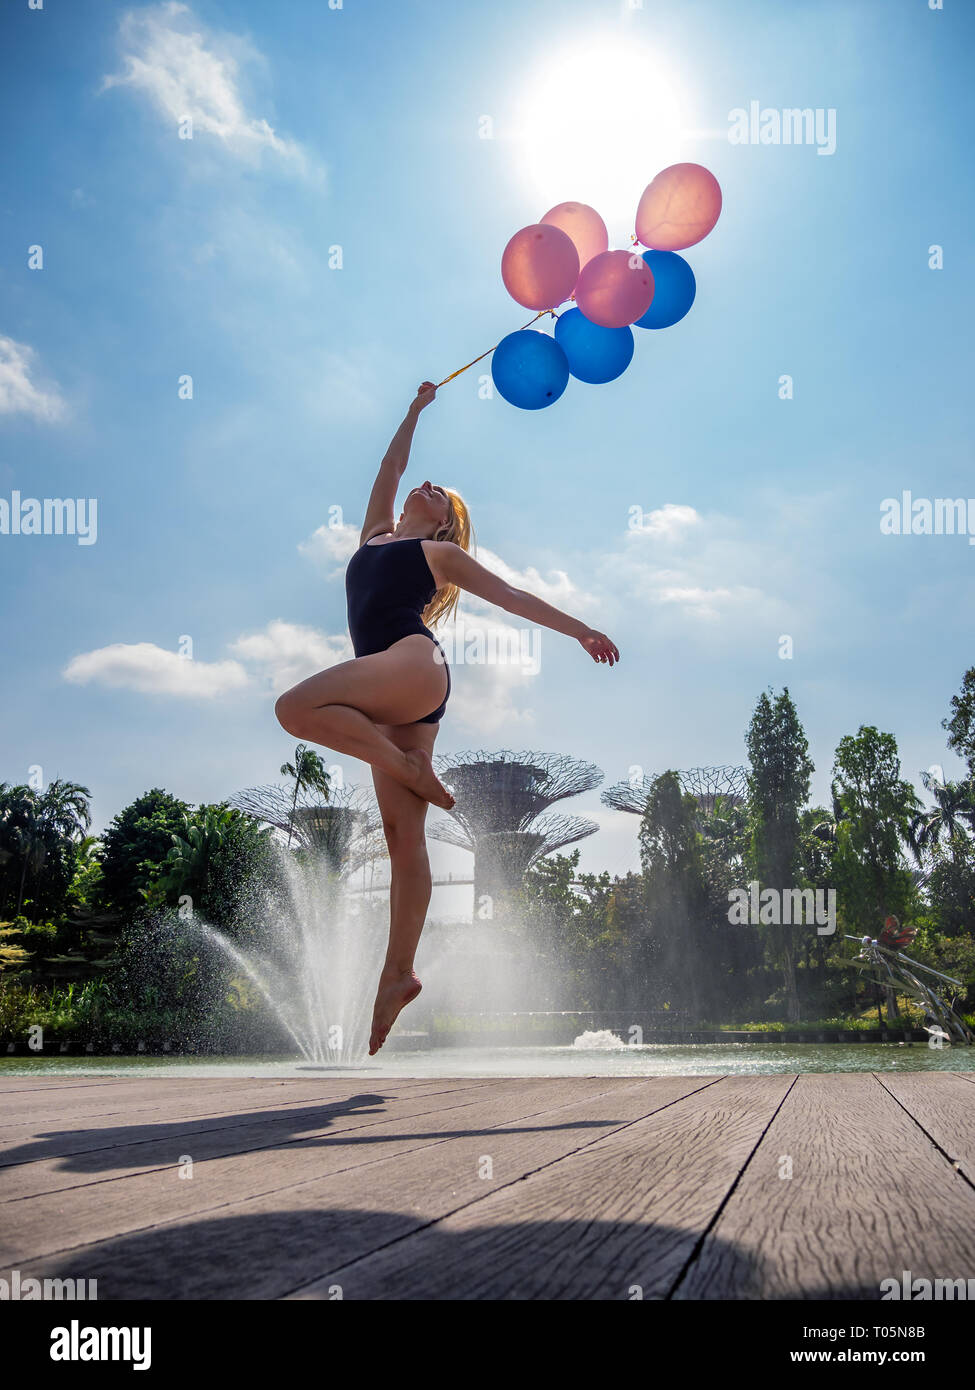 Female ballet dancer holding balloons Banque D'Images